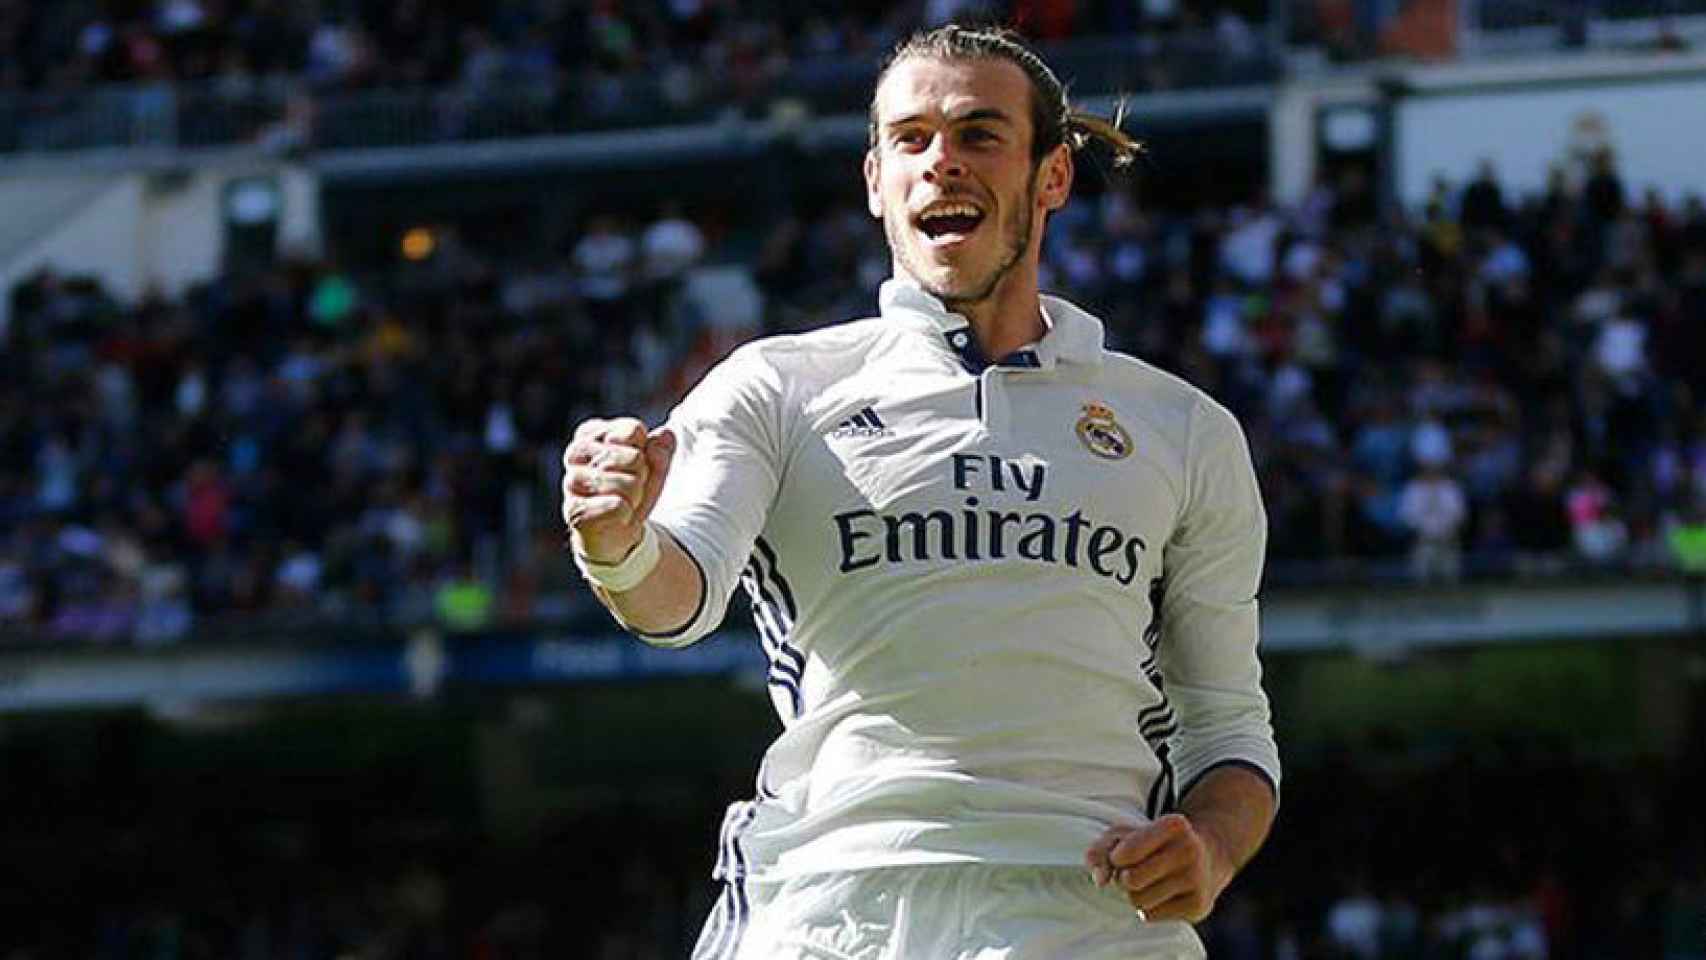 Gareth Bale, el líder del Real Madrid en pretemporada.